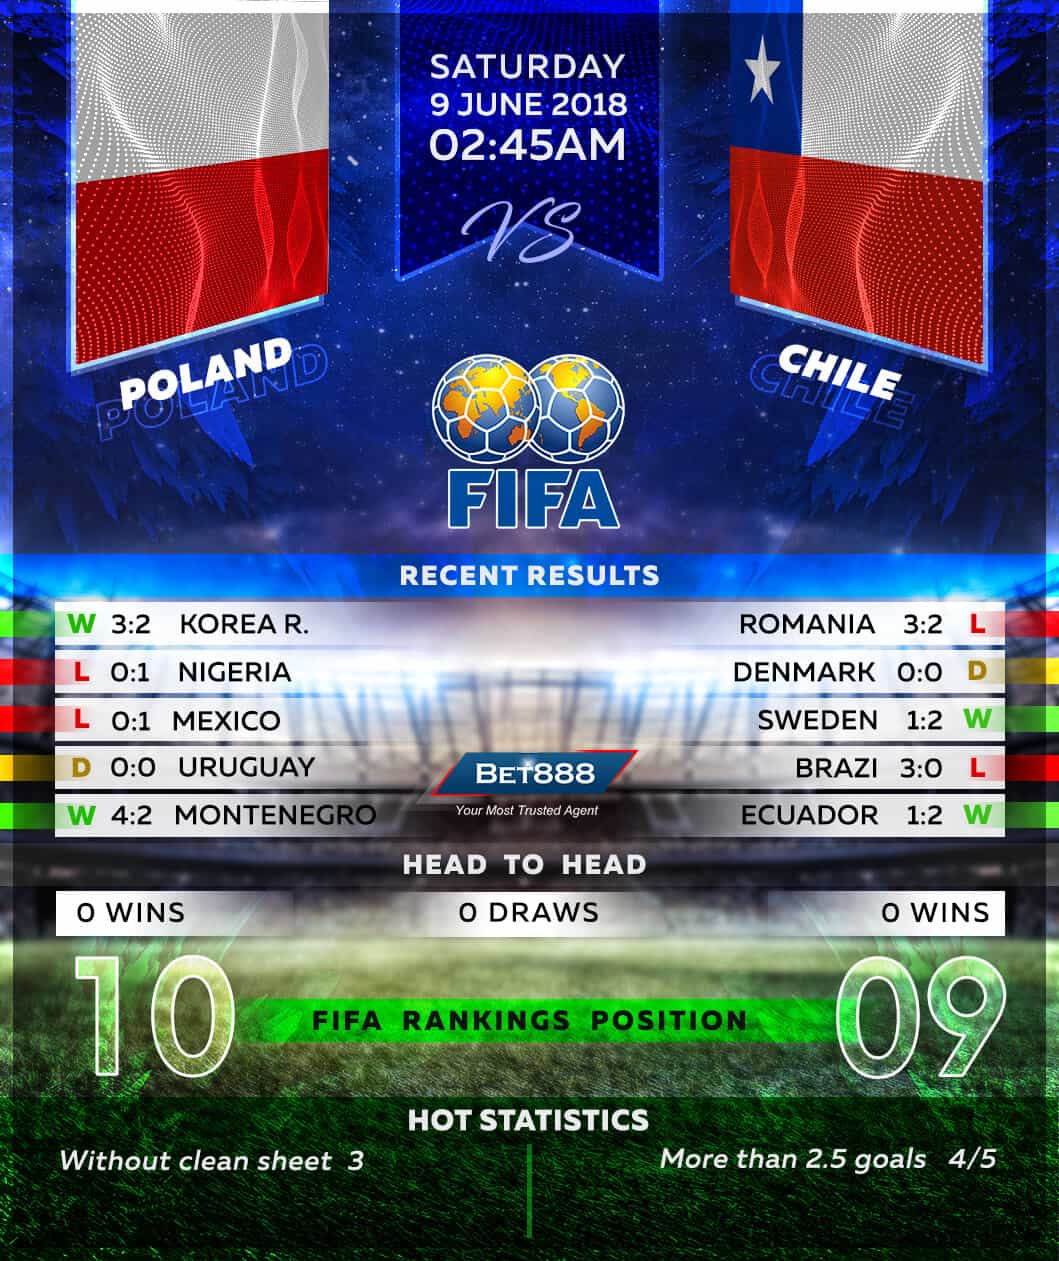 Poland vs Chile 09/06/18